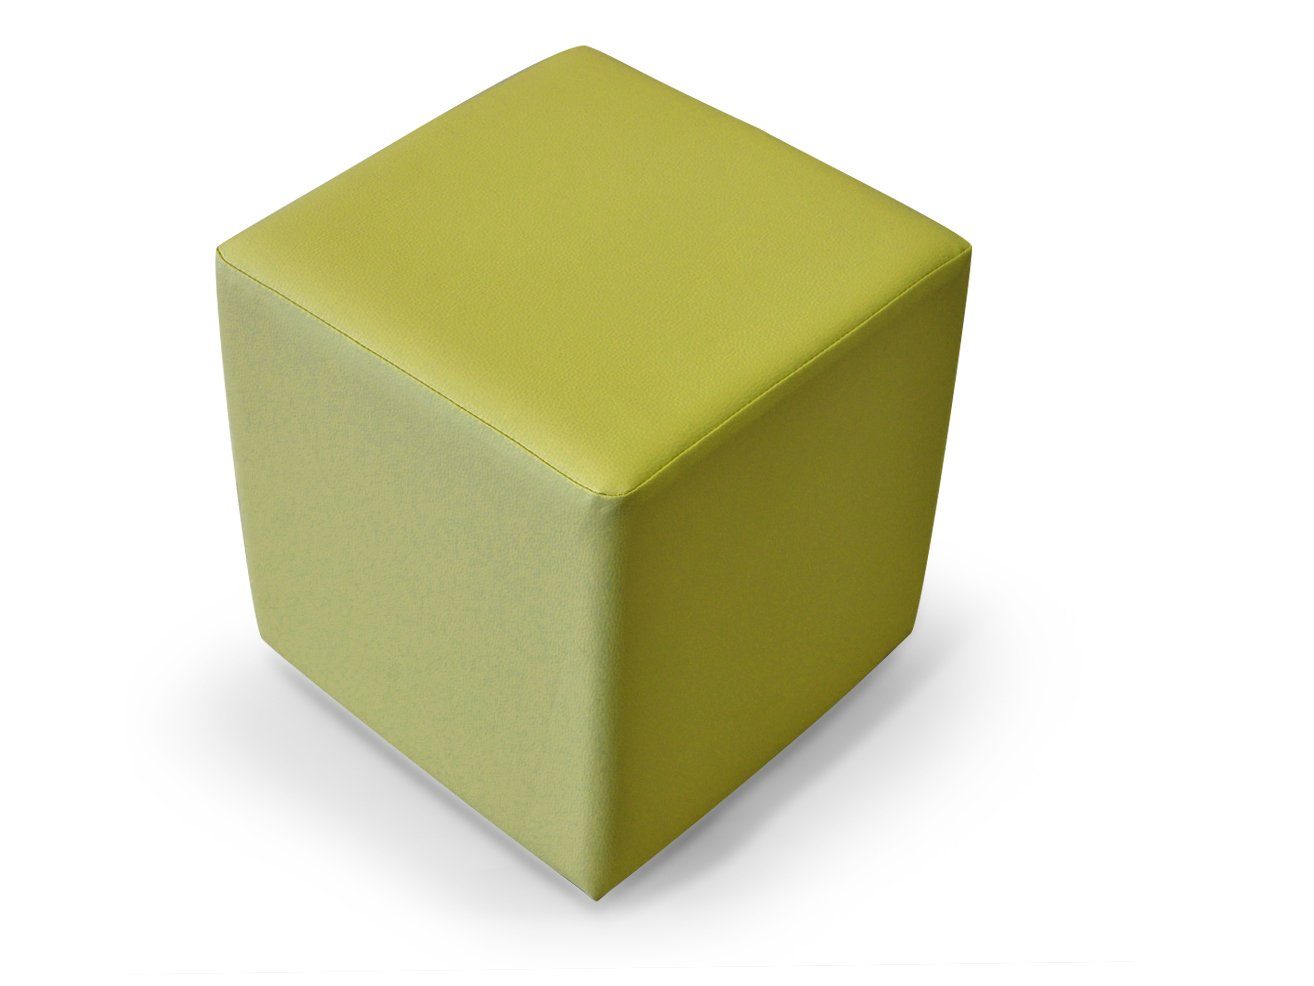 Moebel-Eins 48x43x43, Sessel Bequemer Material KUBUS Sitzwürfel Kunstleder, Bandscheibenwürfel Sitzwürfel, cm 48x43x43 grün KUBUS